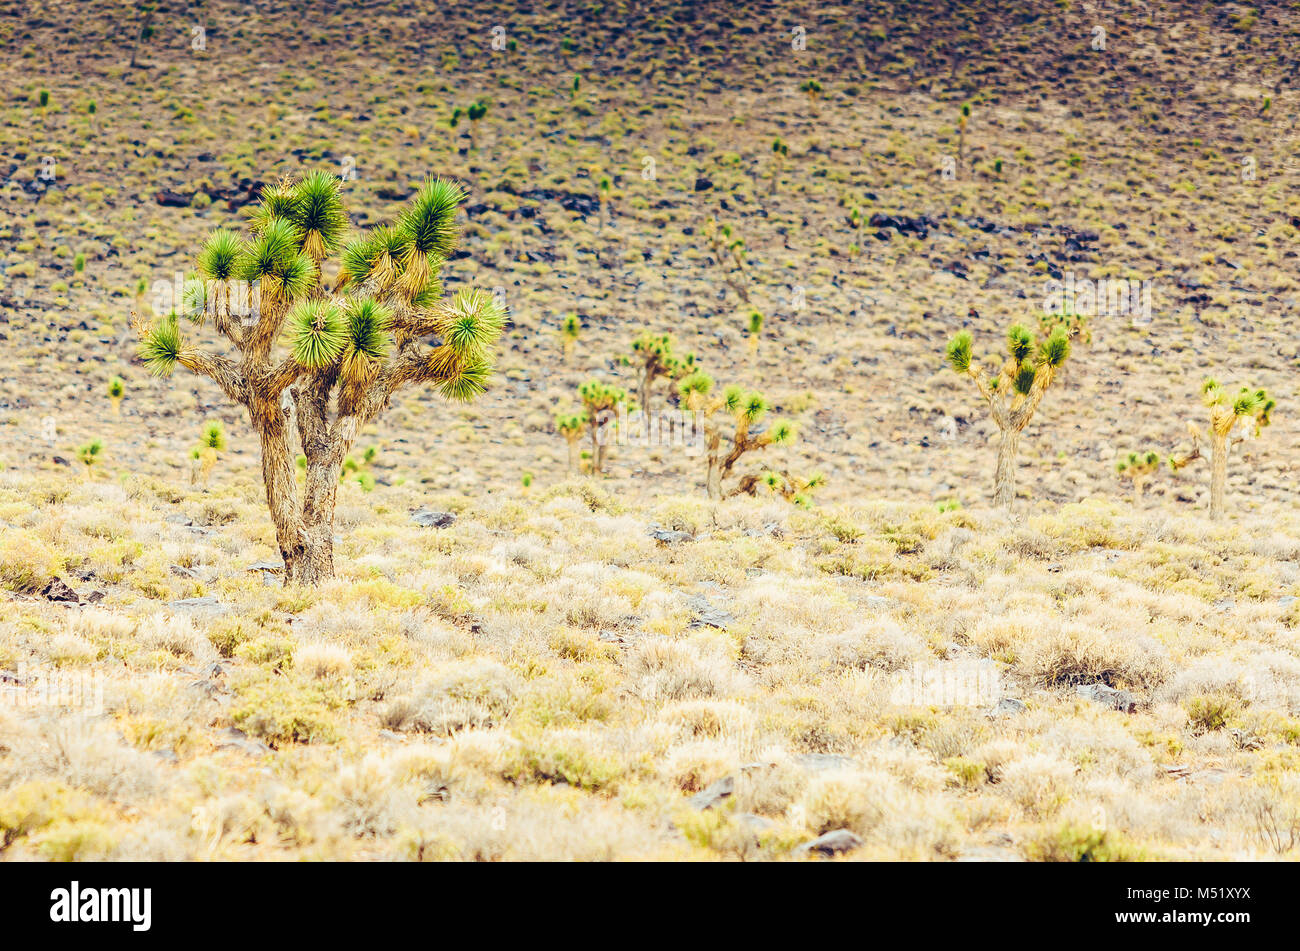 Cholla cactus and Saguaros cactus in Arizona desert landscape. Stock Photo